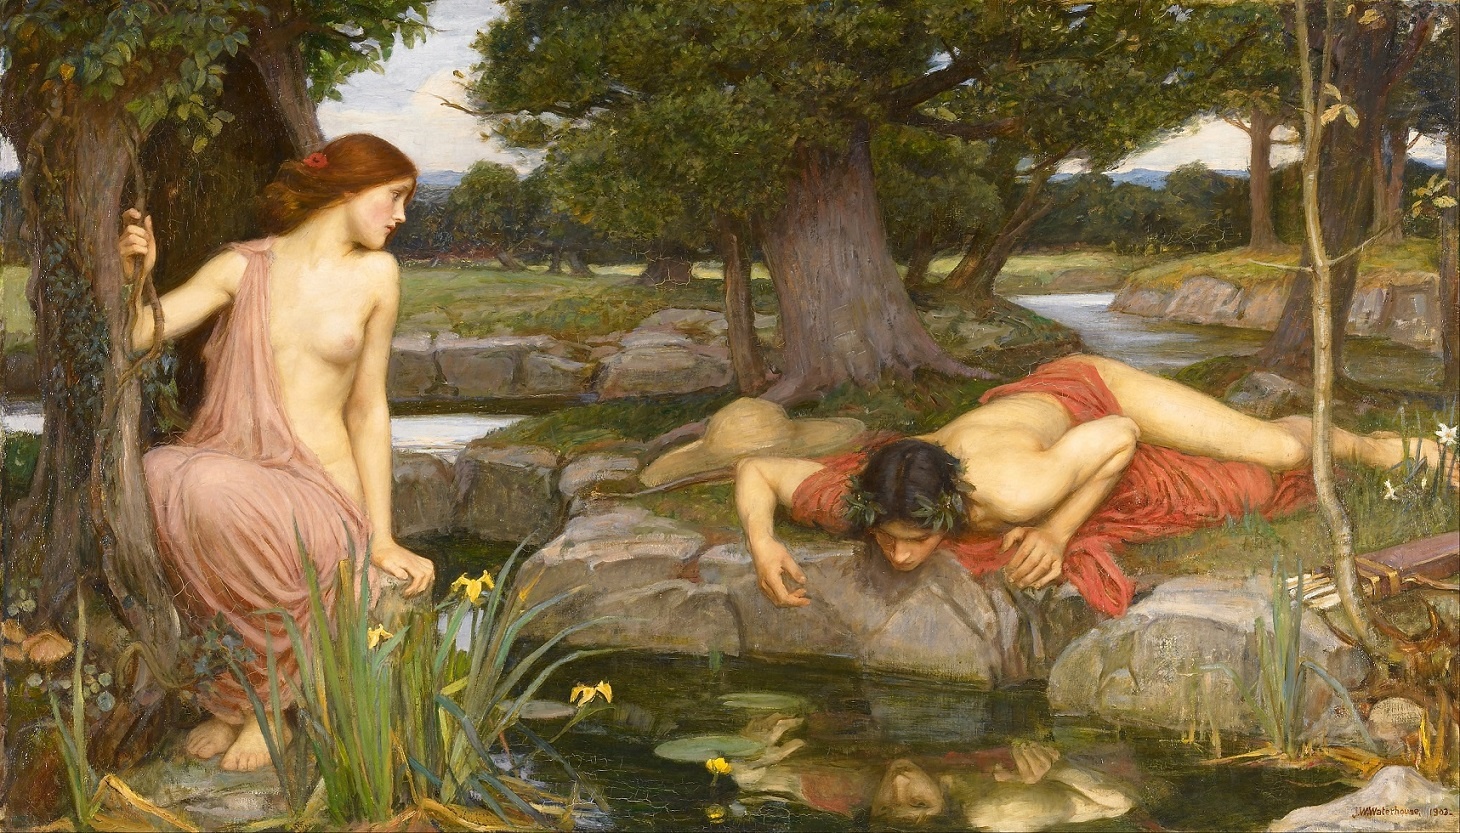 myth of Narcissus